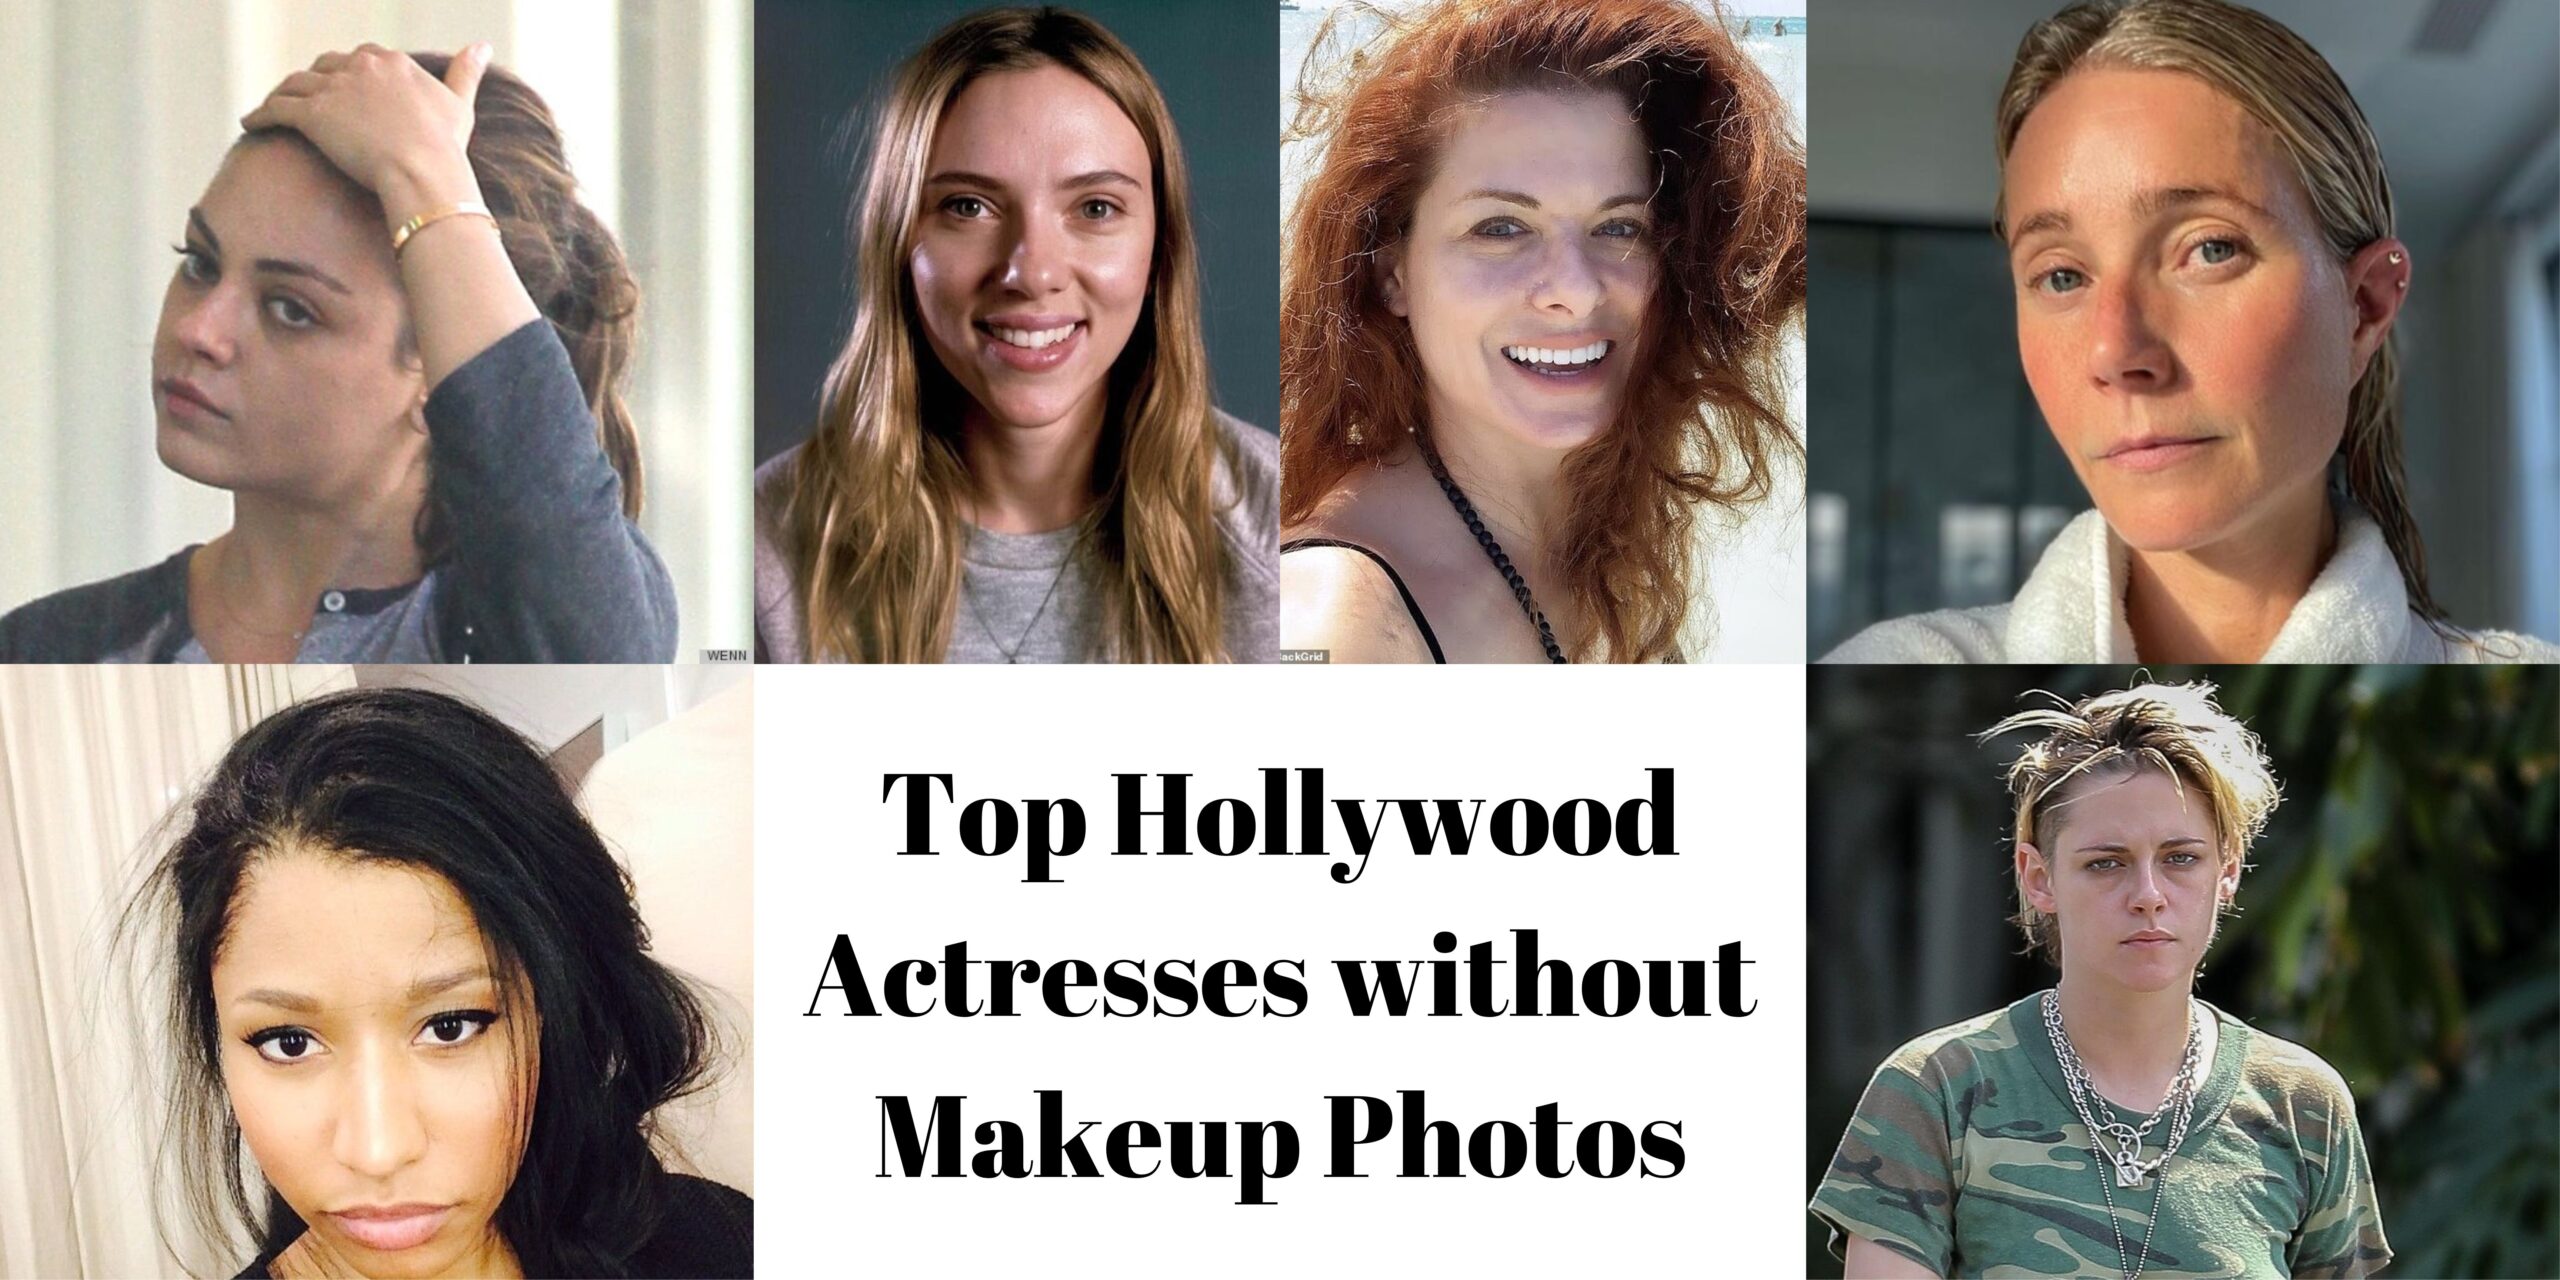 Top Hollywood Actresses without Makeup Photos